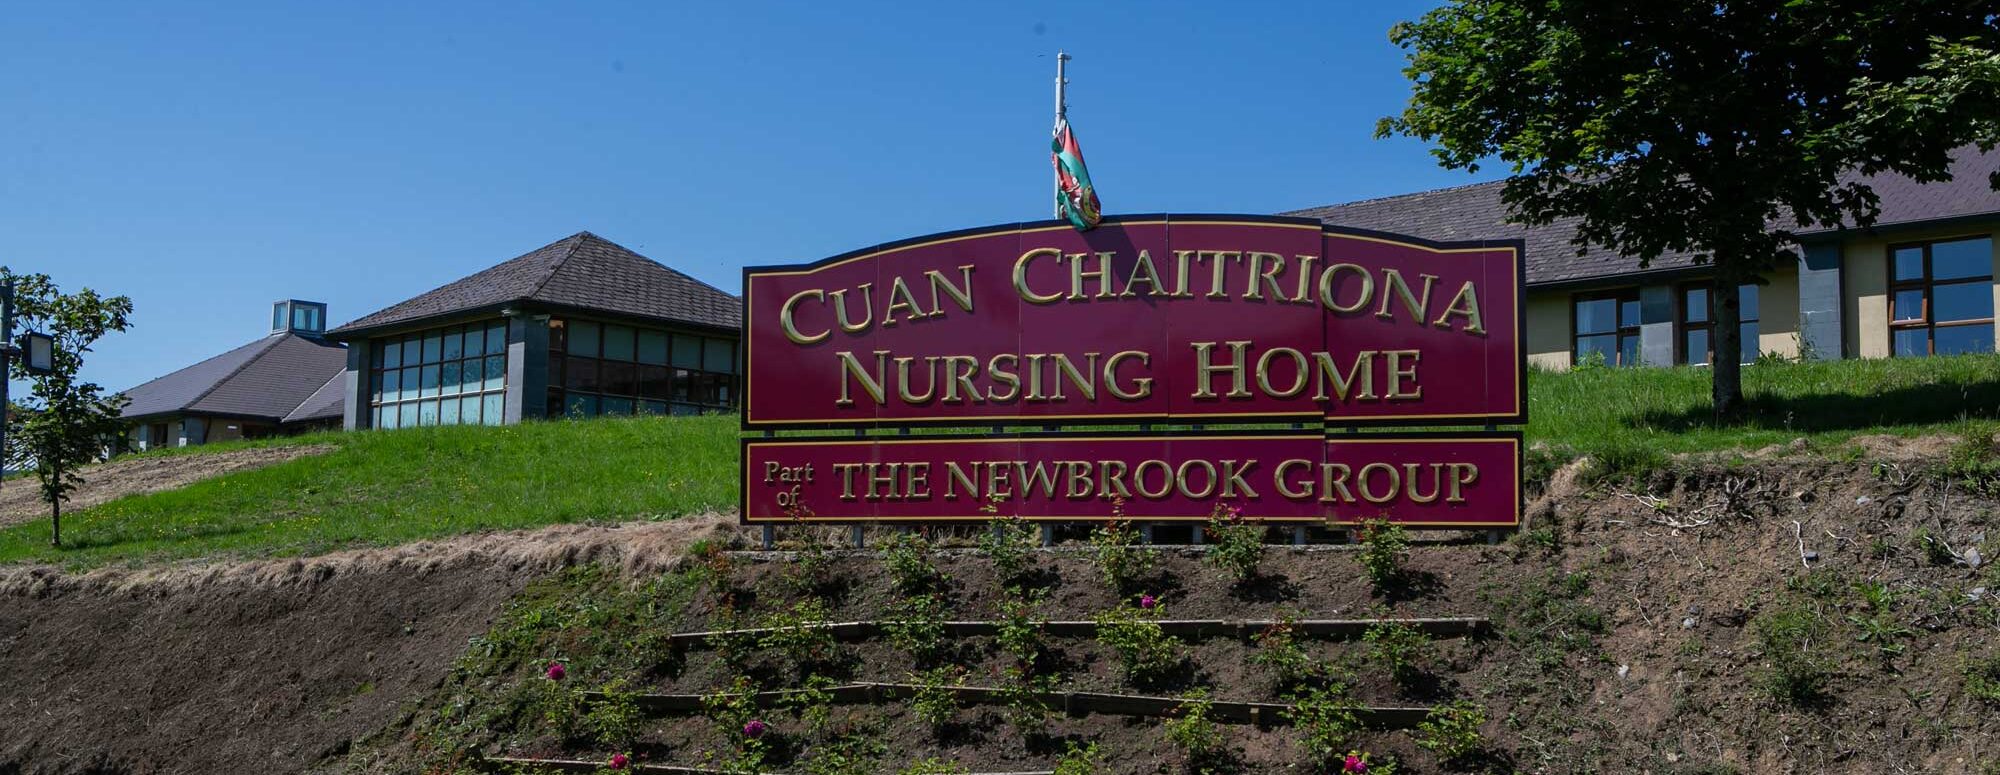 Cuan Chaitriona Nursing Home